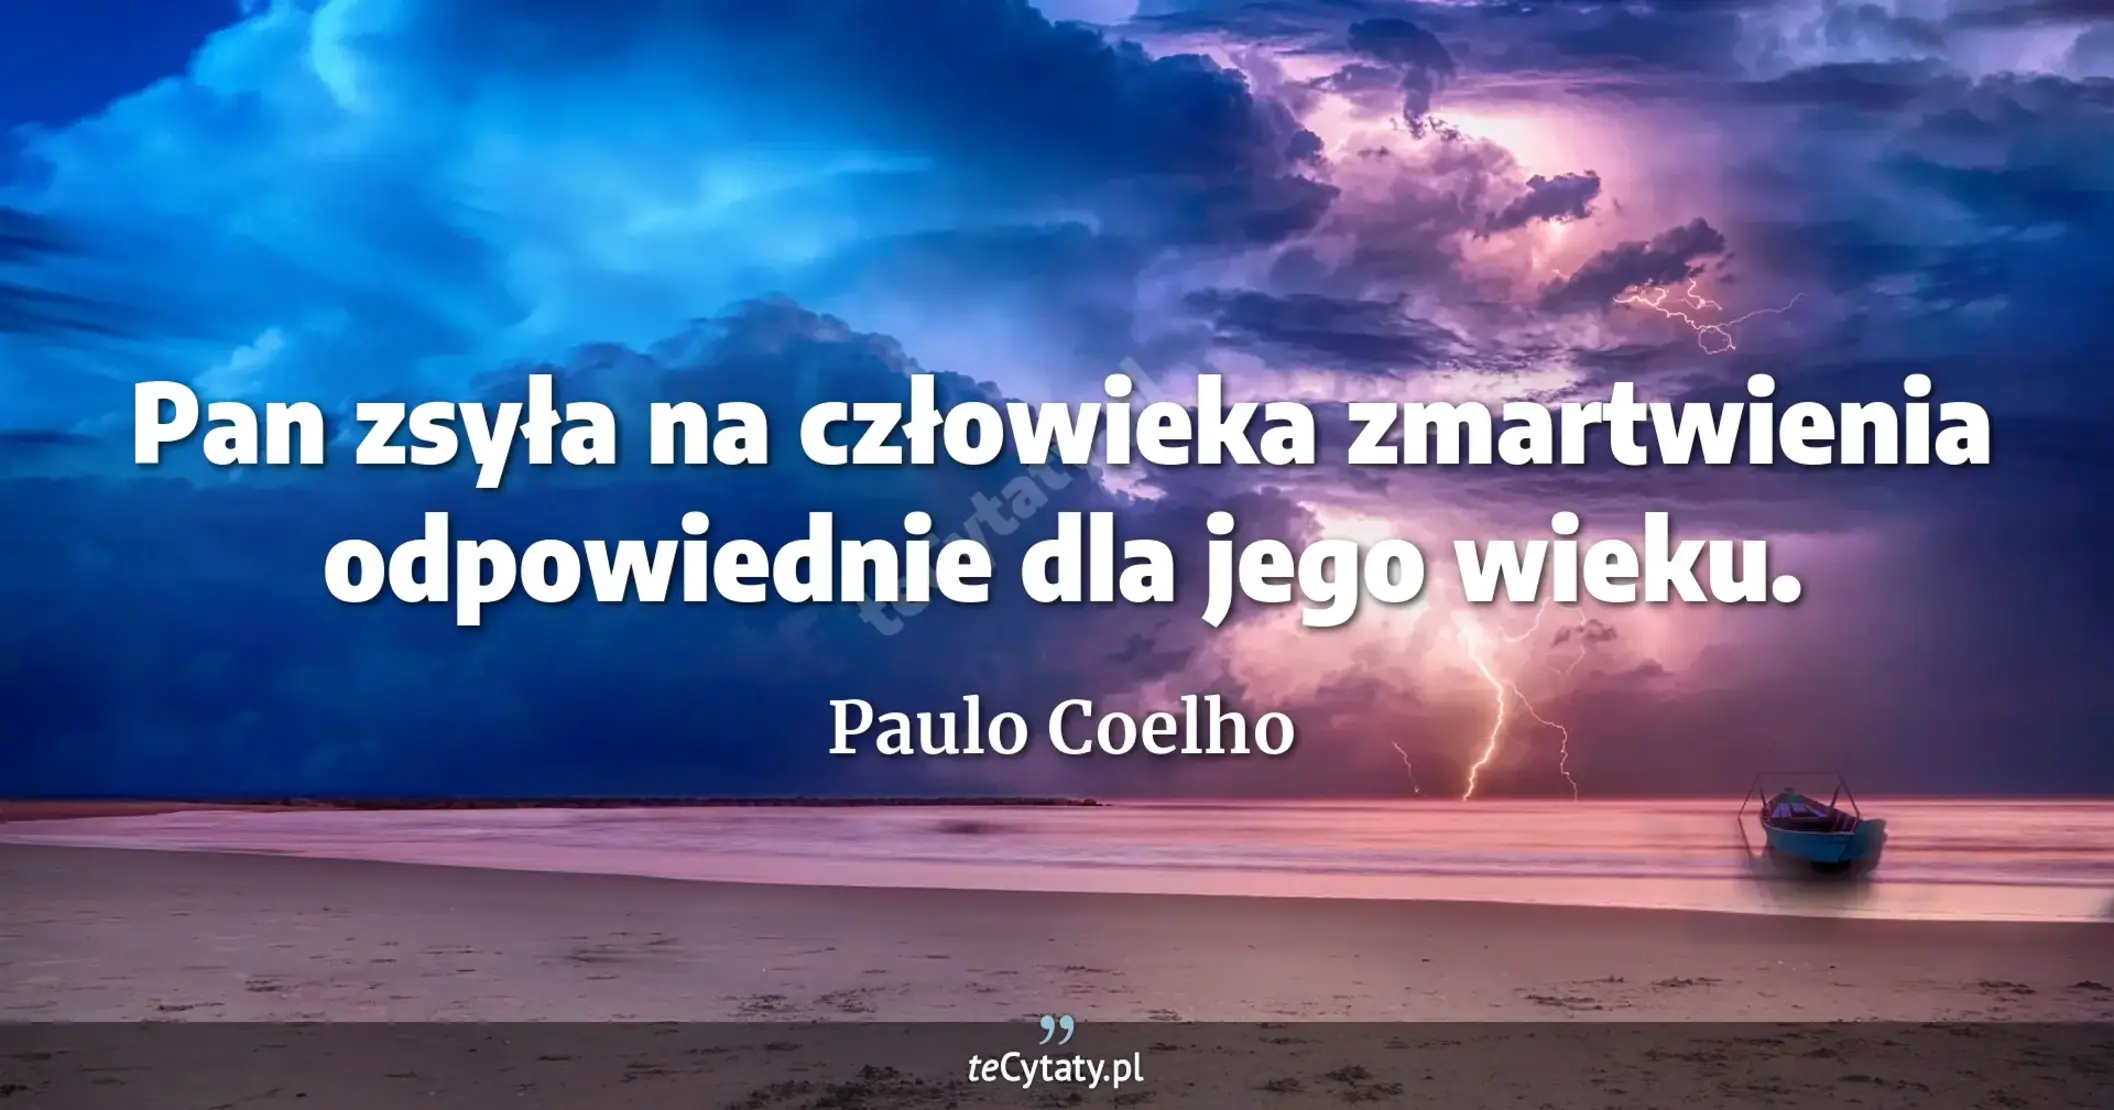 Pan zsyła na człowieka zmartwienia odpowiednie dla jego wieku. - Paulo Coelho